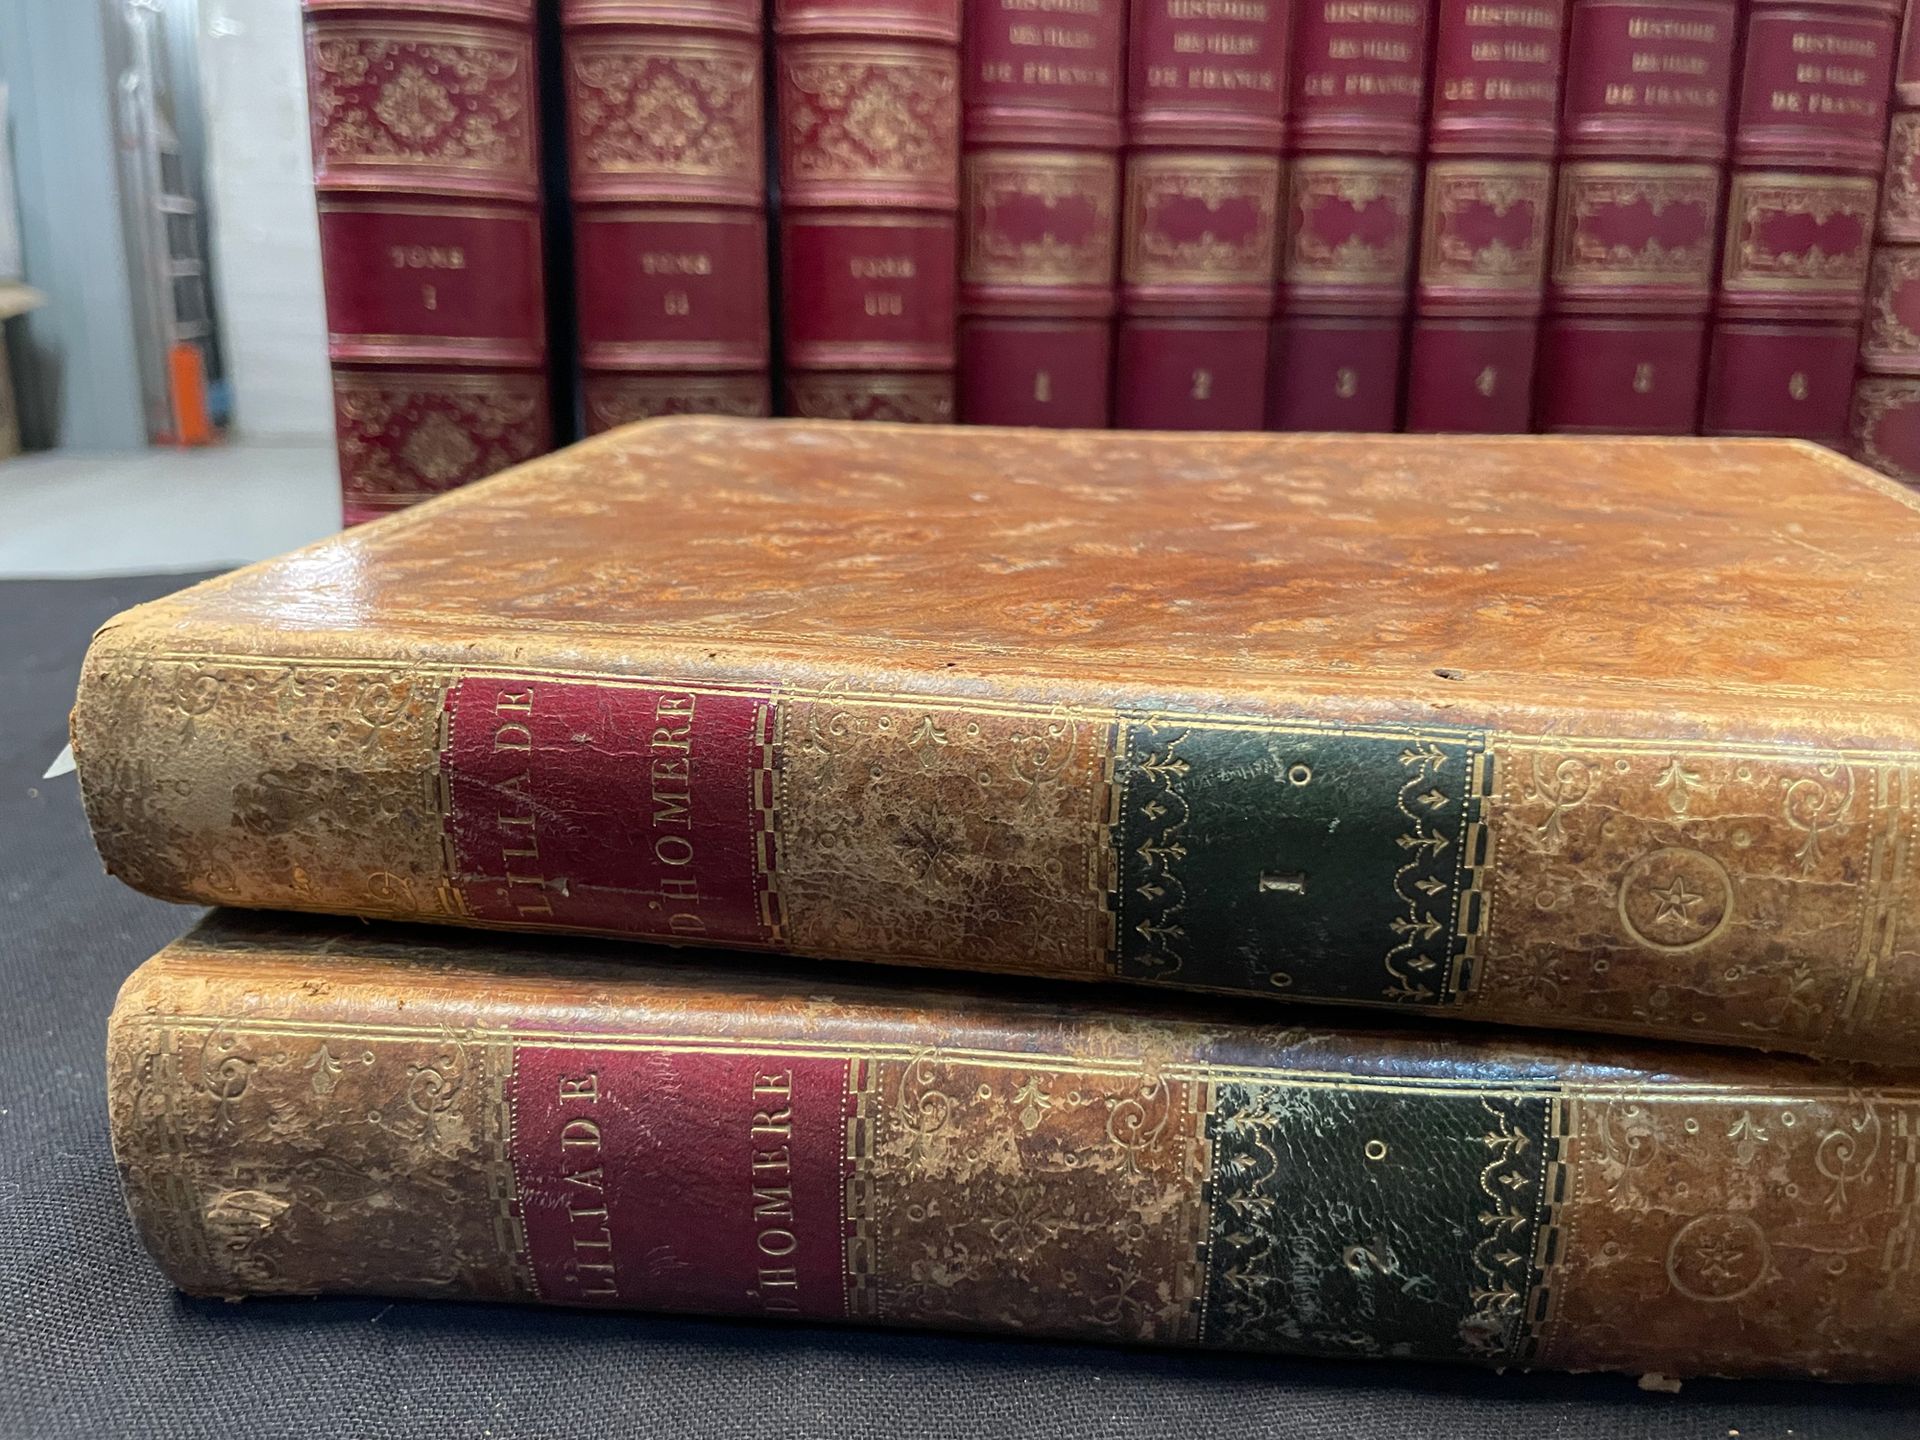 HOMERE L'Iliade et l'Odyssée. 1795.
2 volumes
En état